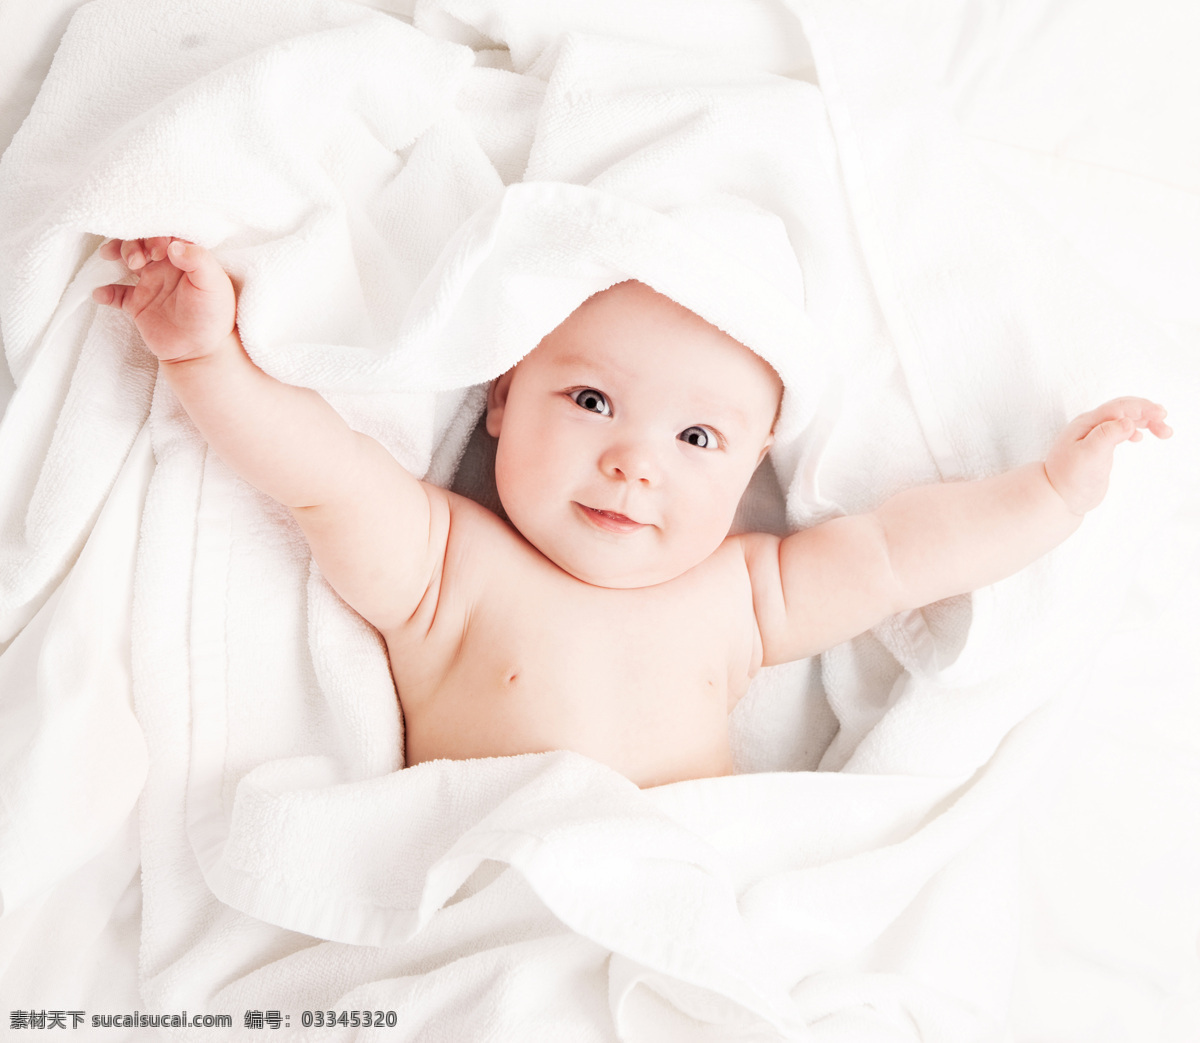 张开 双臂 可爱 婴儿 张开双臂 可爱婴儿 宝宝 微笑 白色床单 儿童图片 人物图片